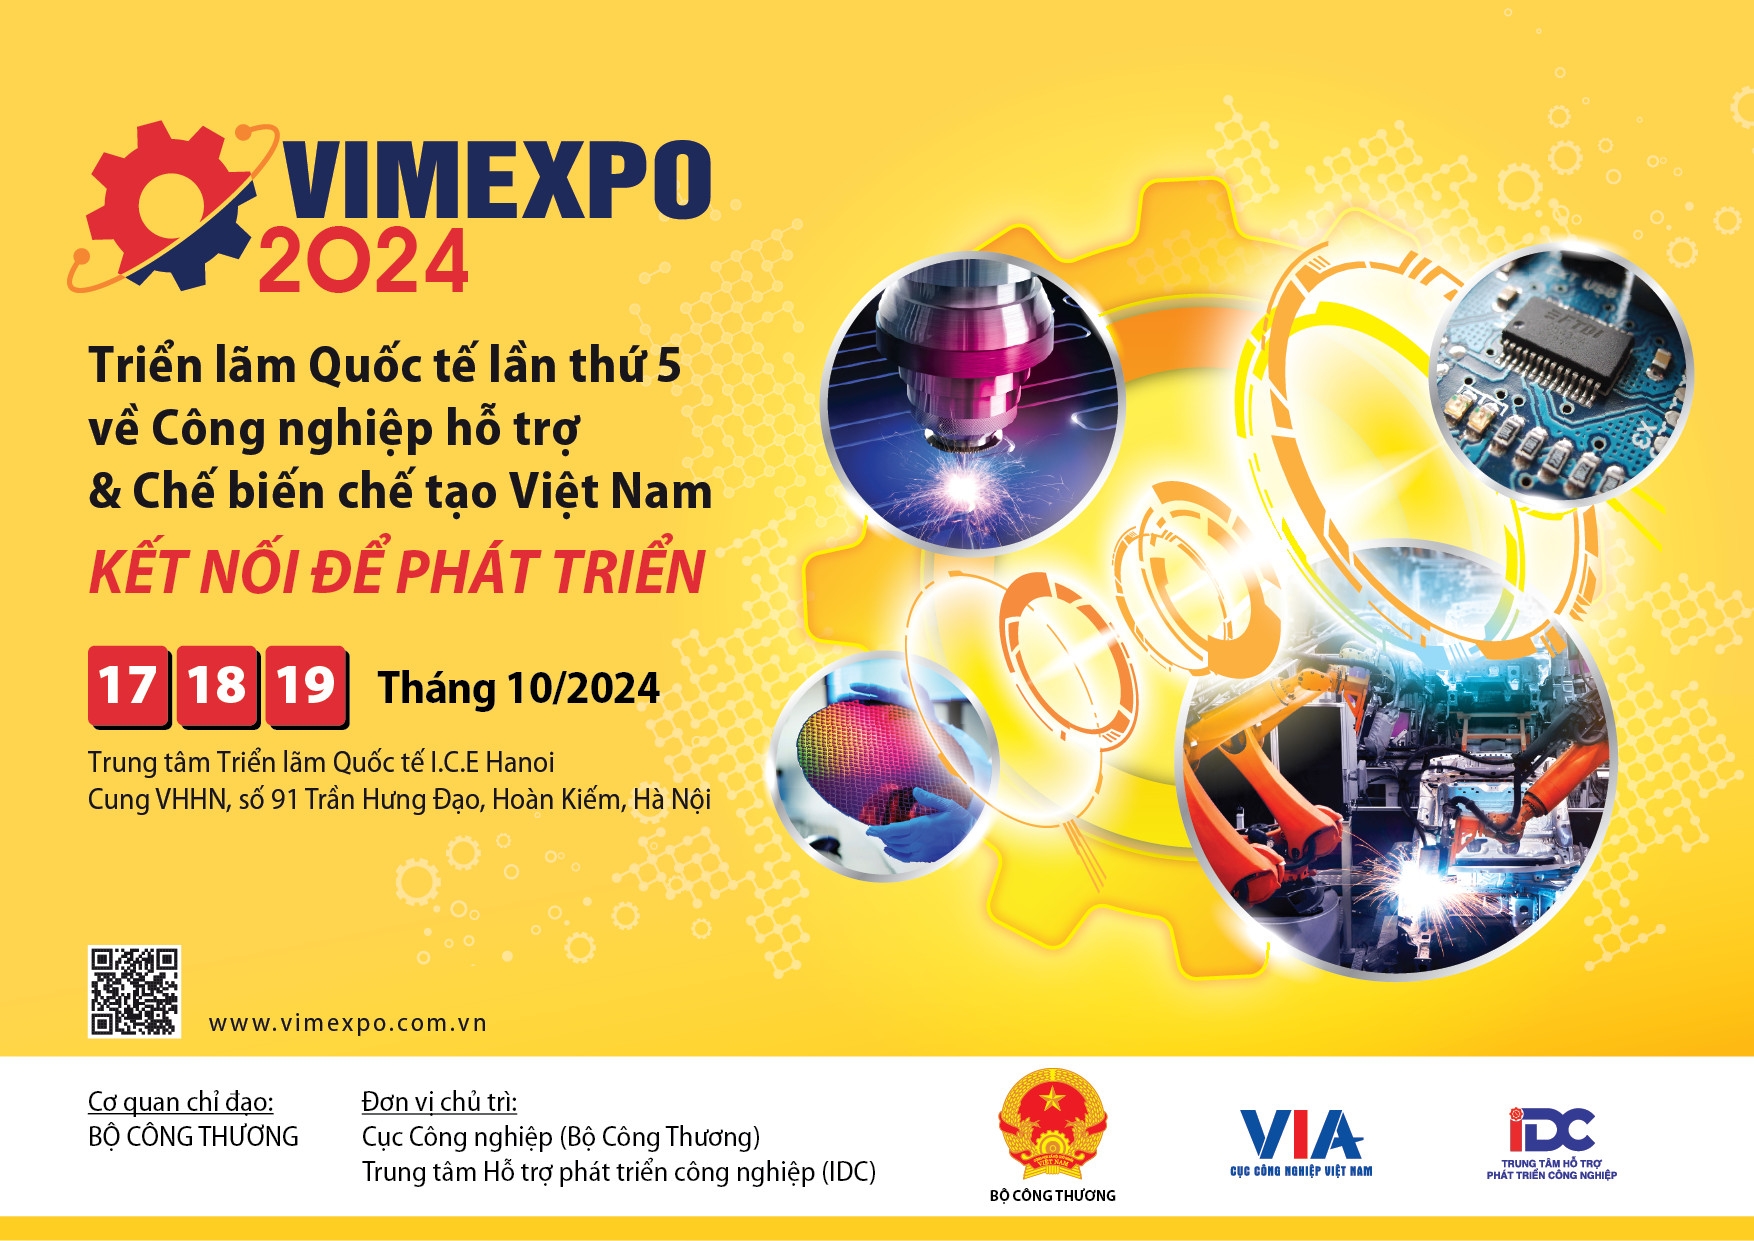 Ngành công nghiệp hỗ trợ Việt Nam: Những kỳ vọng mới trong năm 2024